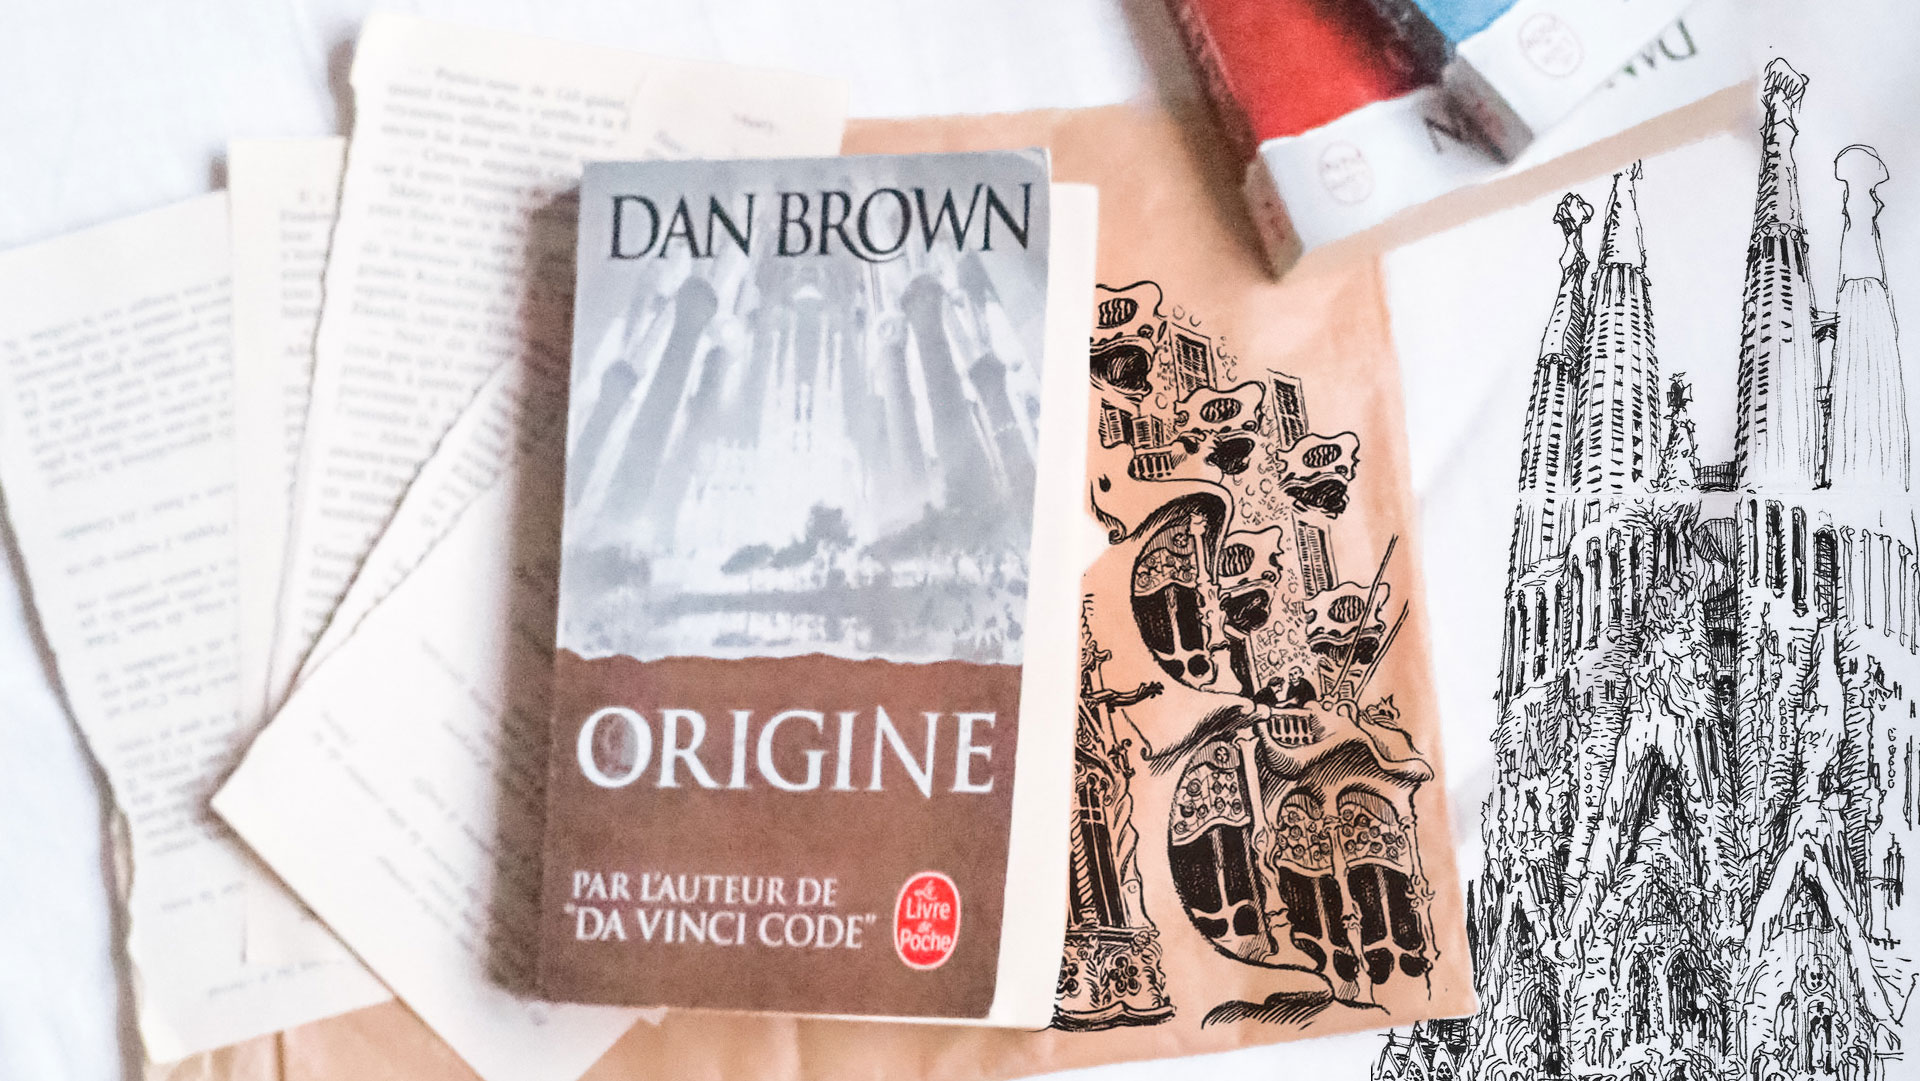 origine-dan-brown-2